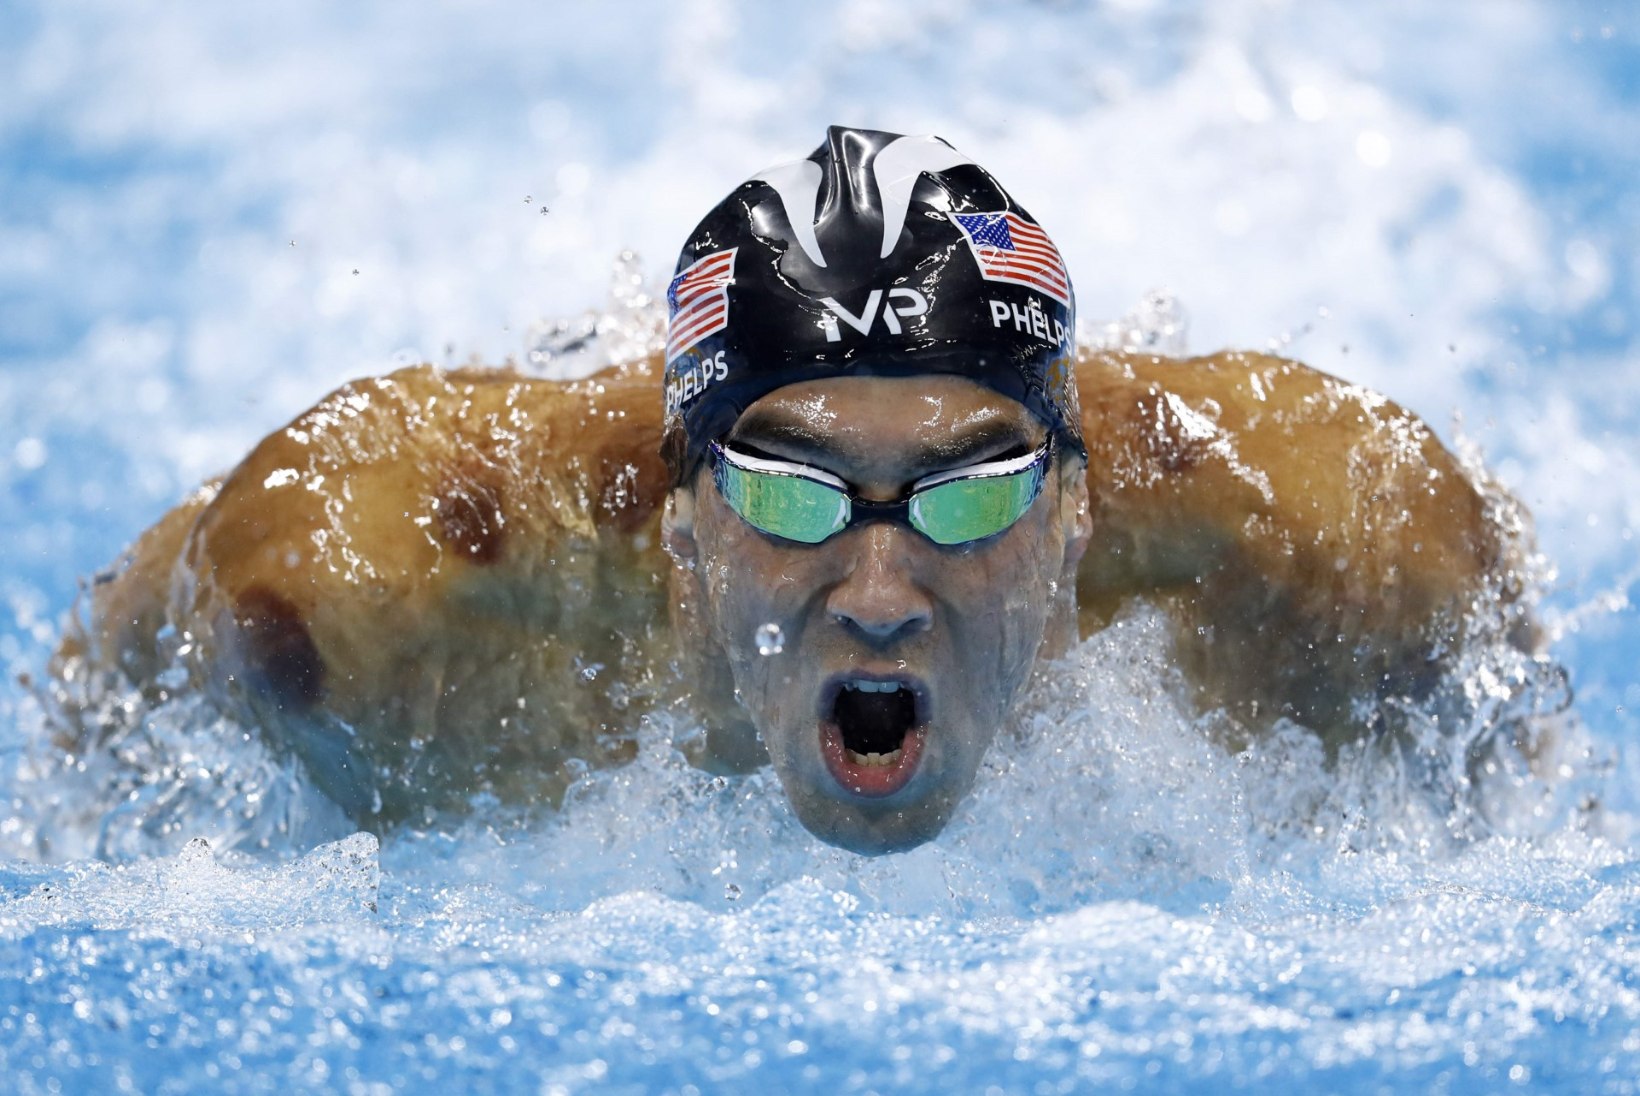 ÕL RIOS | 20 kukkus! Phelps kirjutas olümpiaajalukku veel ühe peatüki